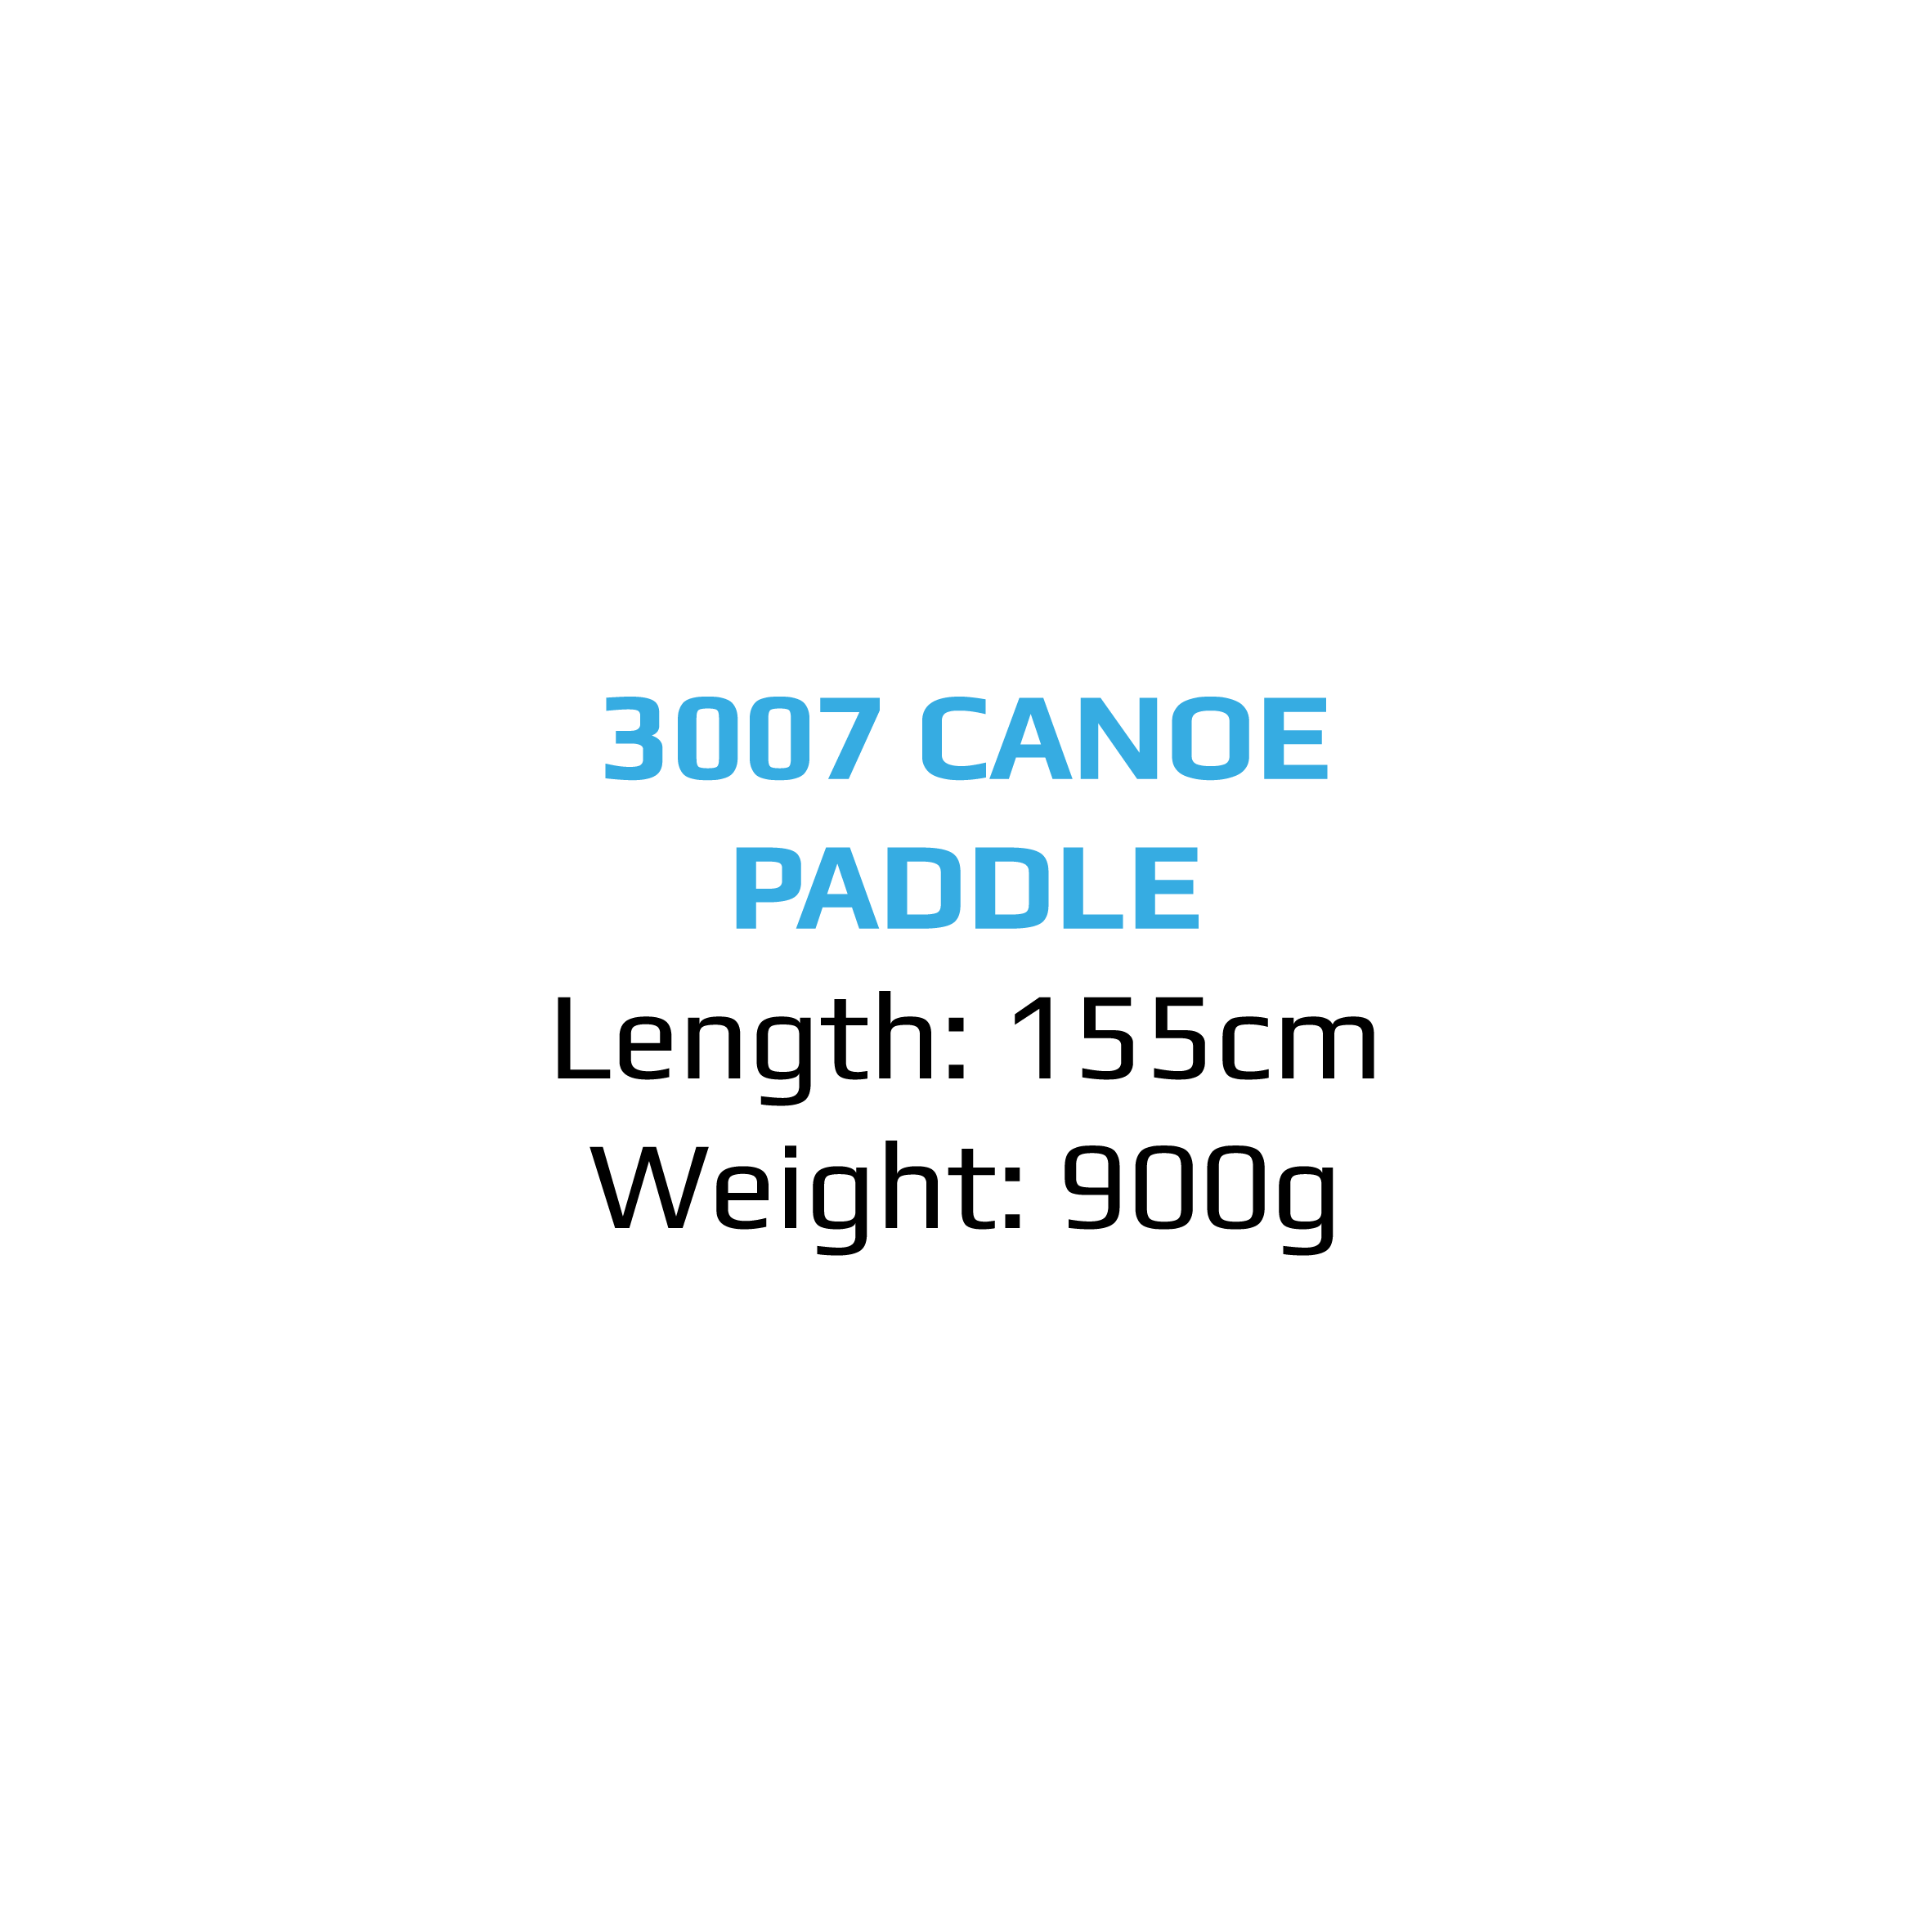 3007 CANOE PADDLE